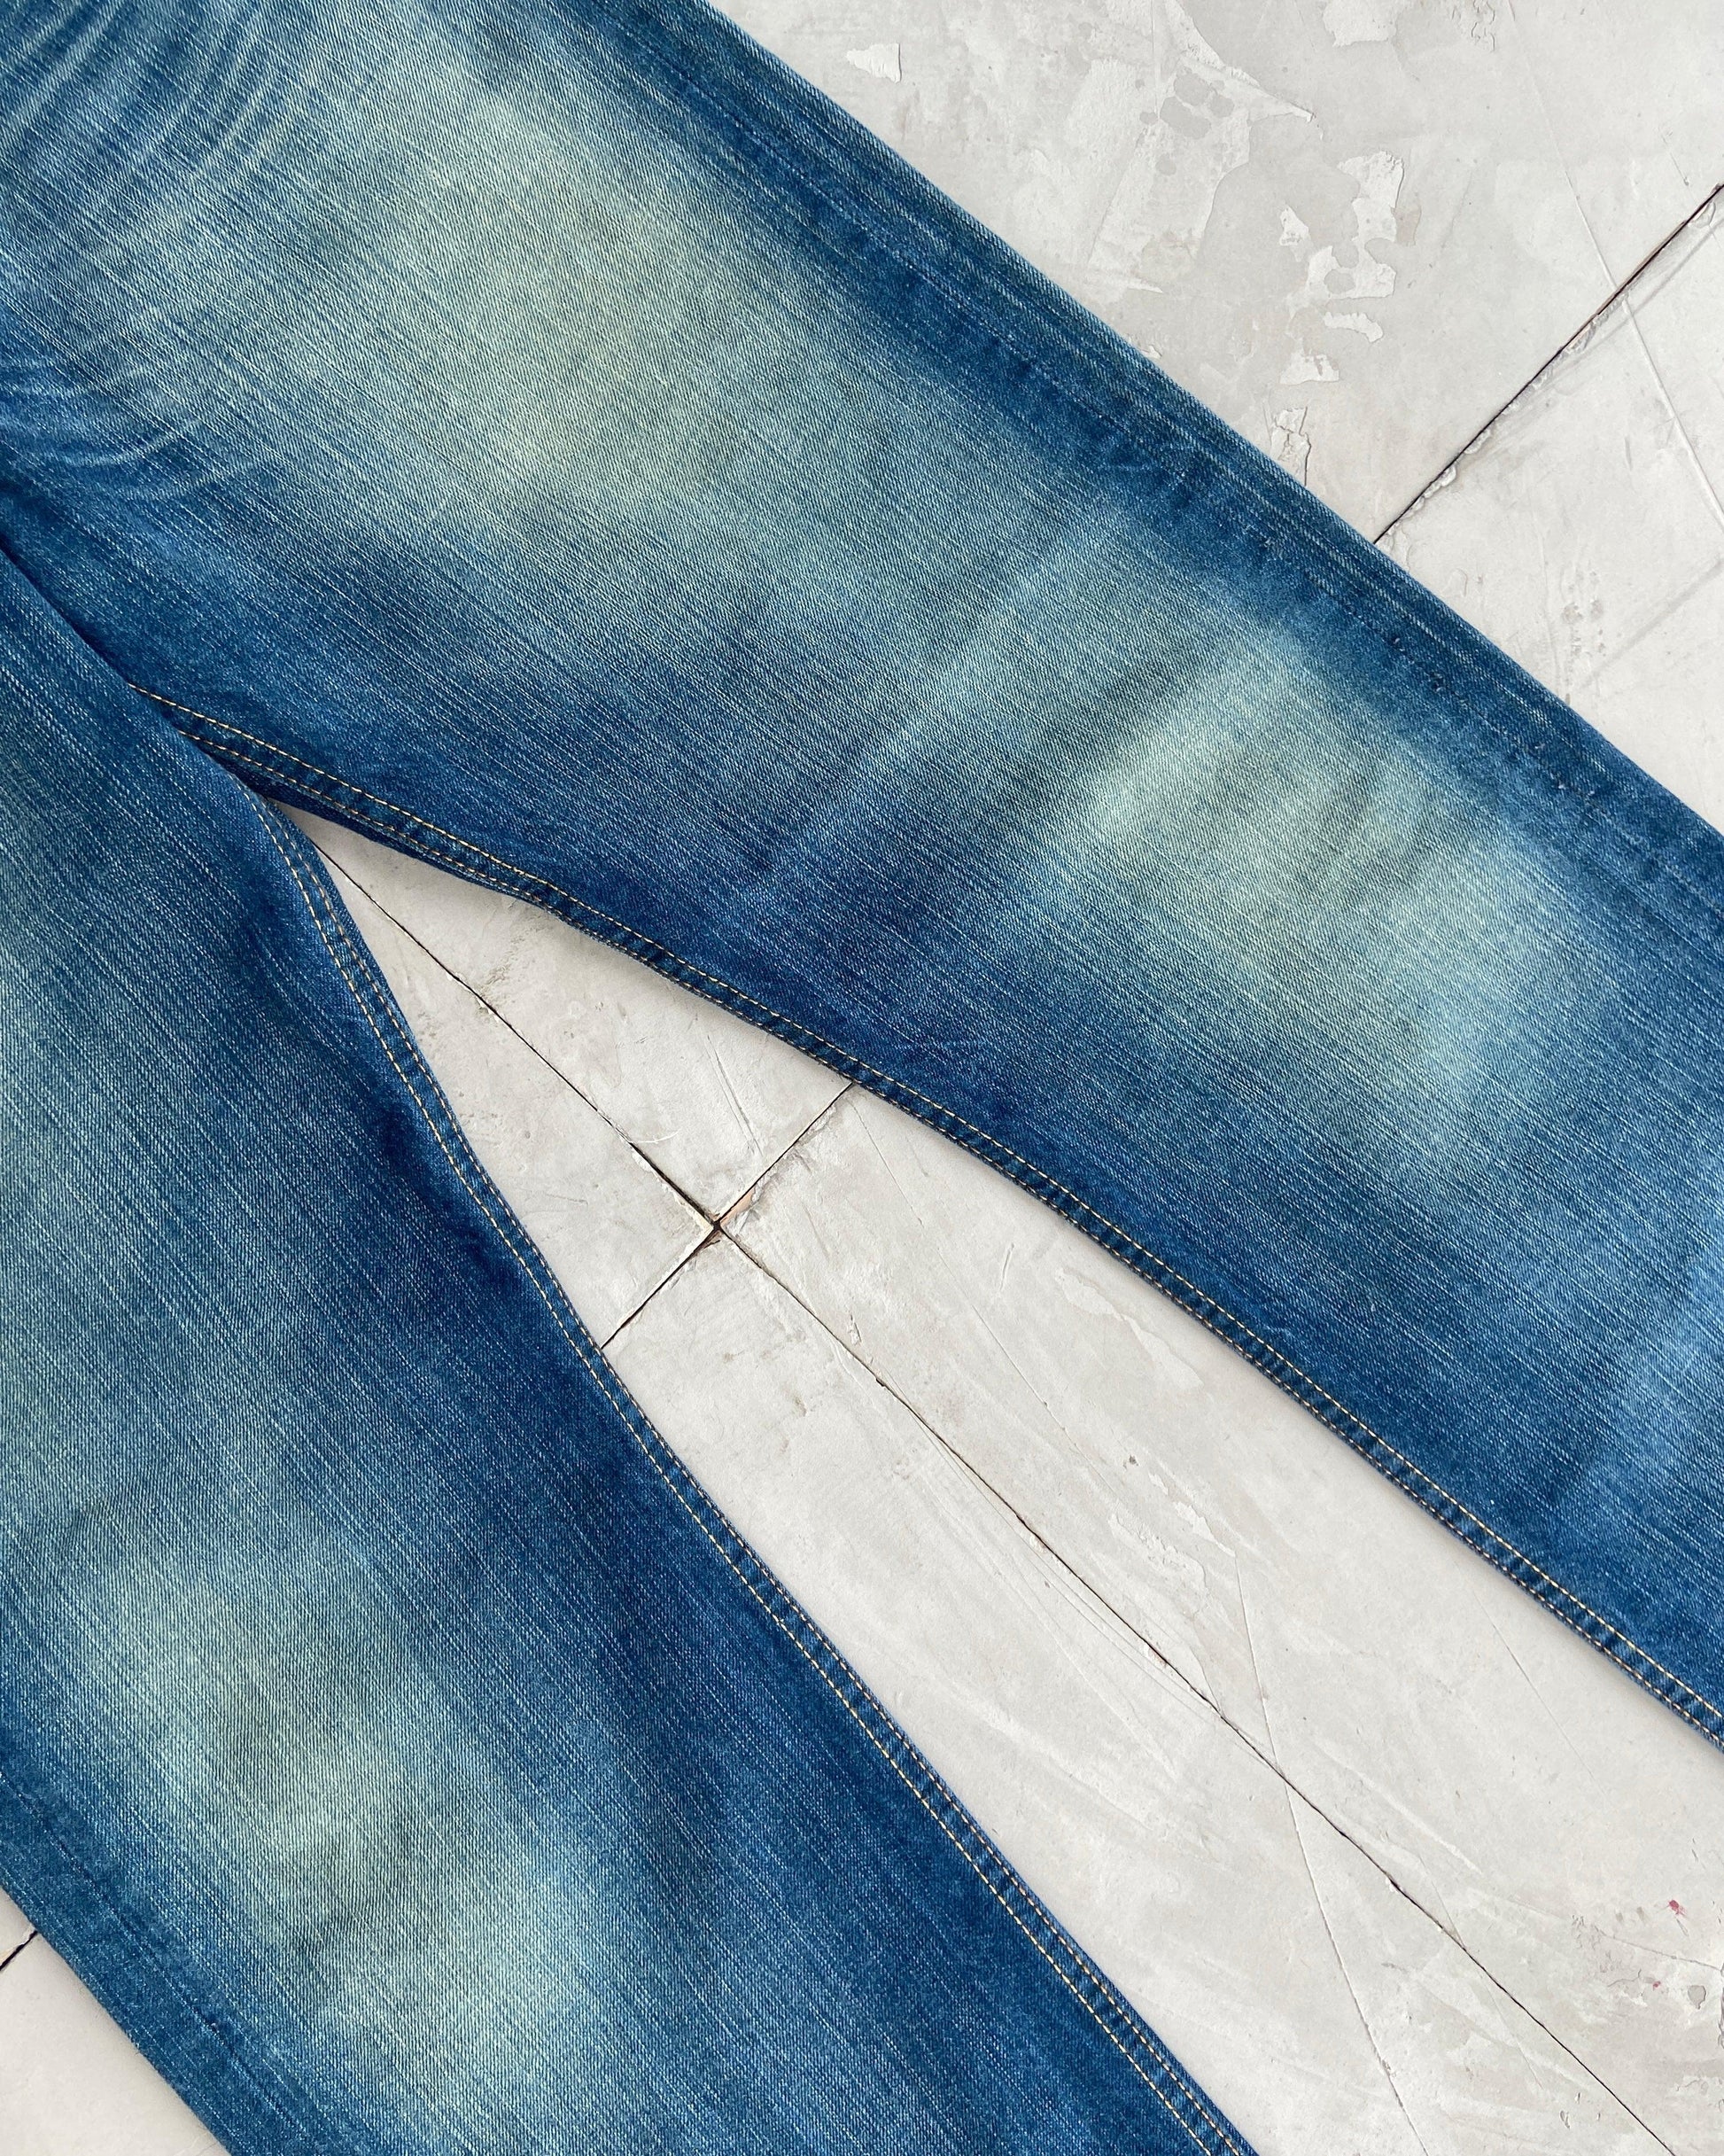 LEVI 501 VINTAGE STRAIGHT LEG BLUE JEANS - W30 - Known Source